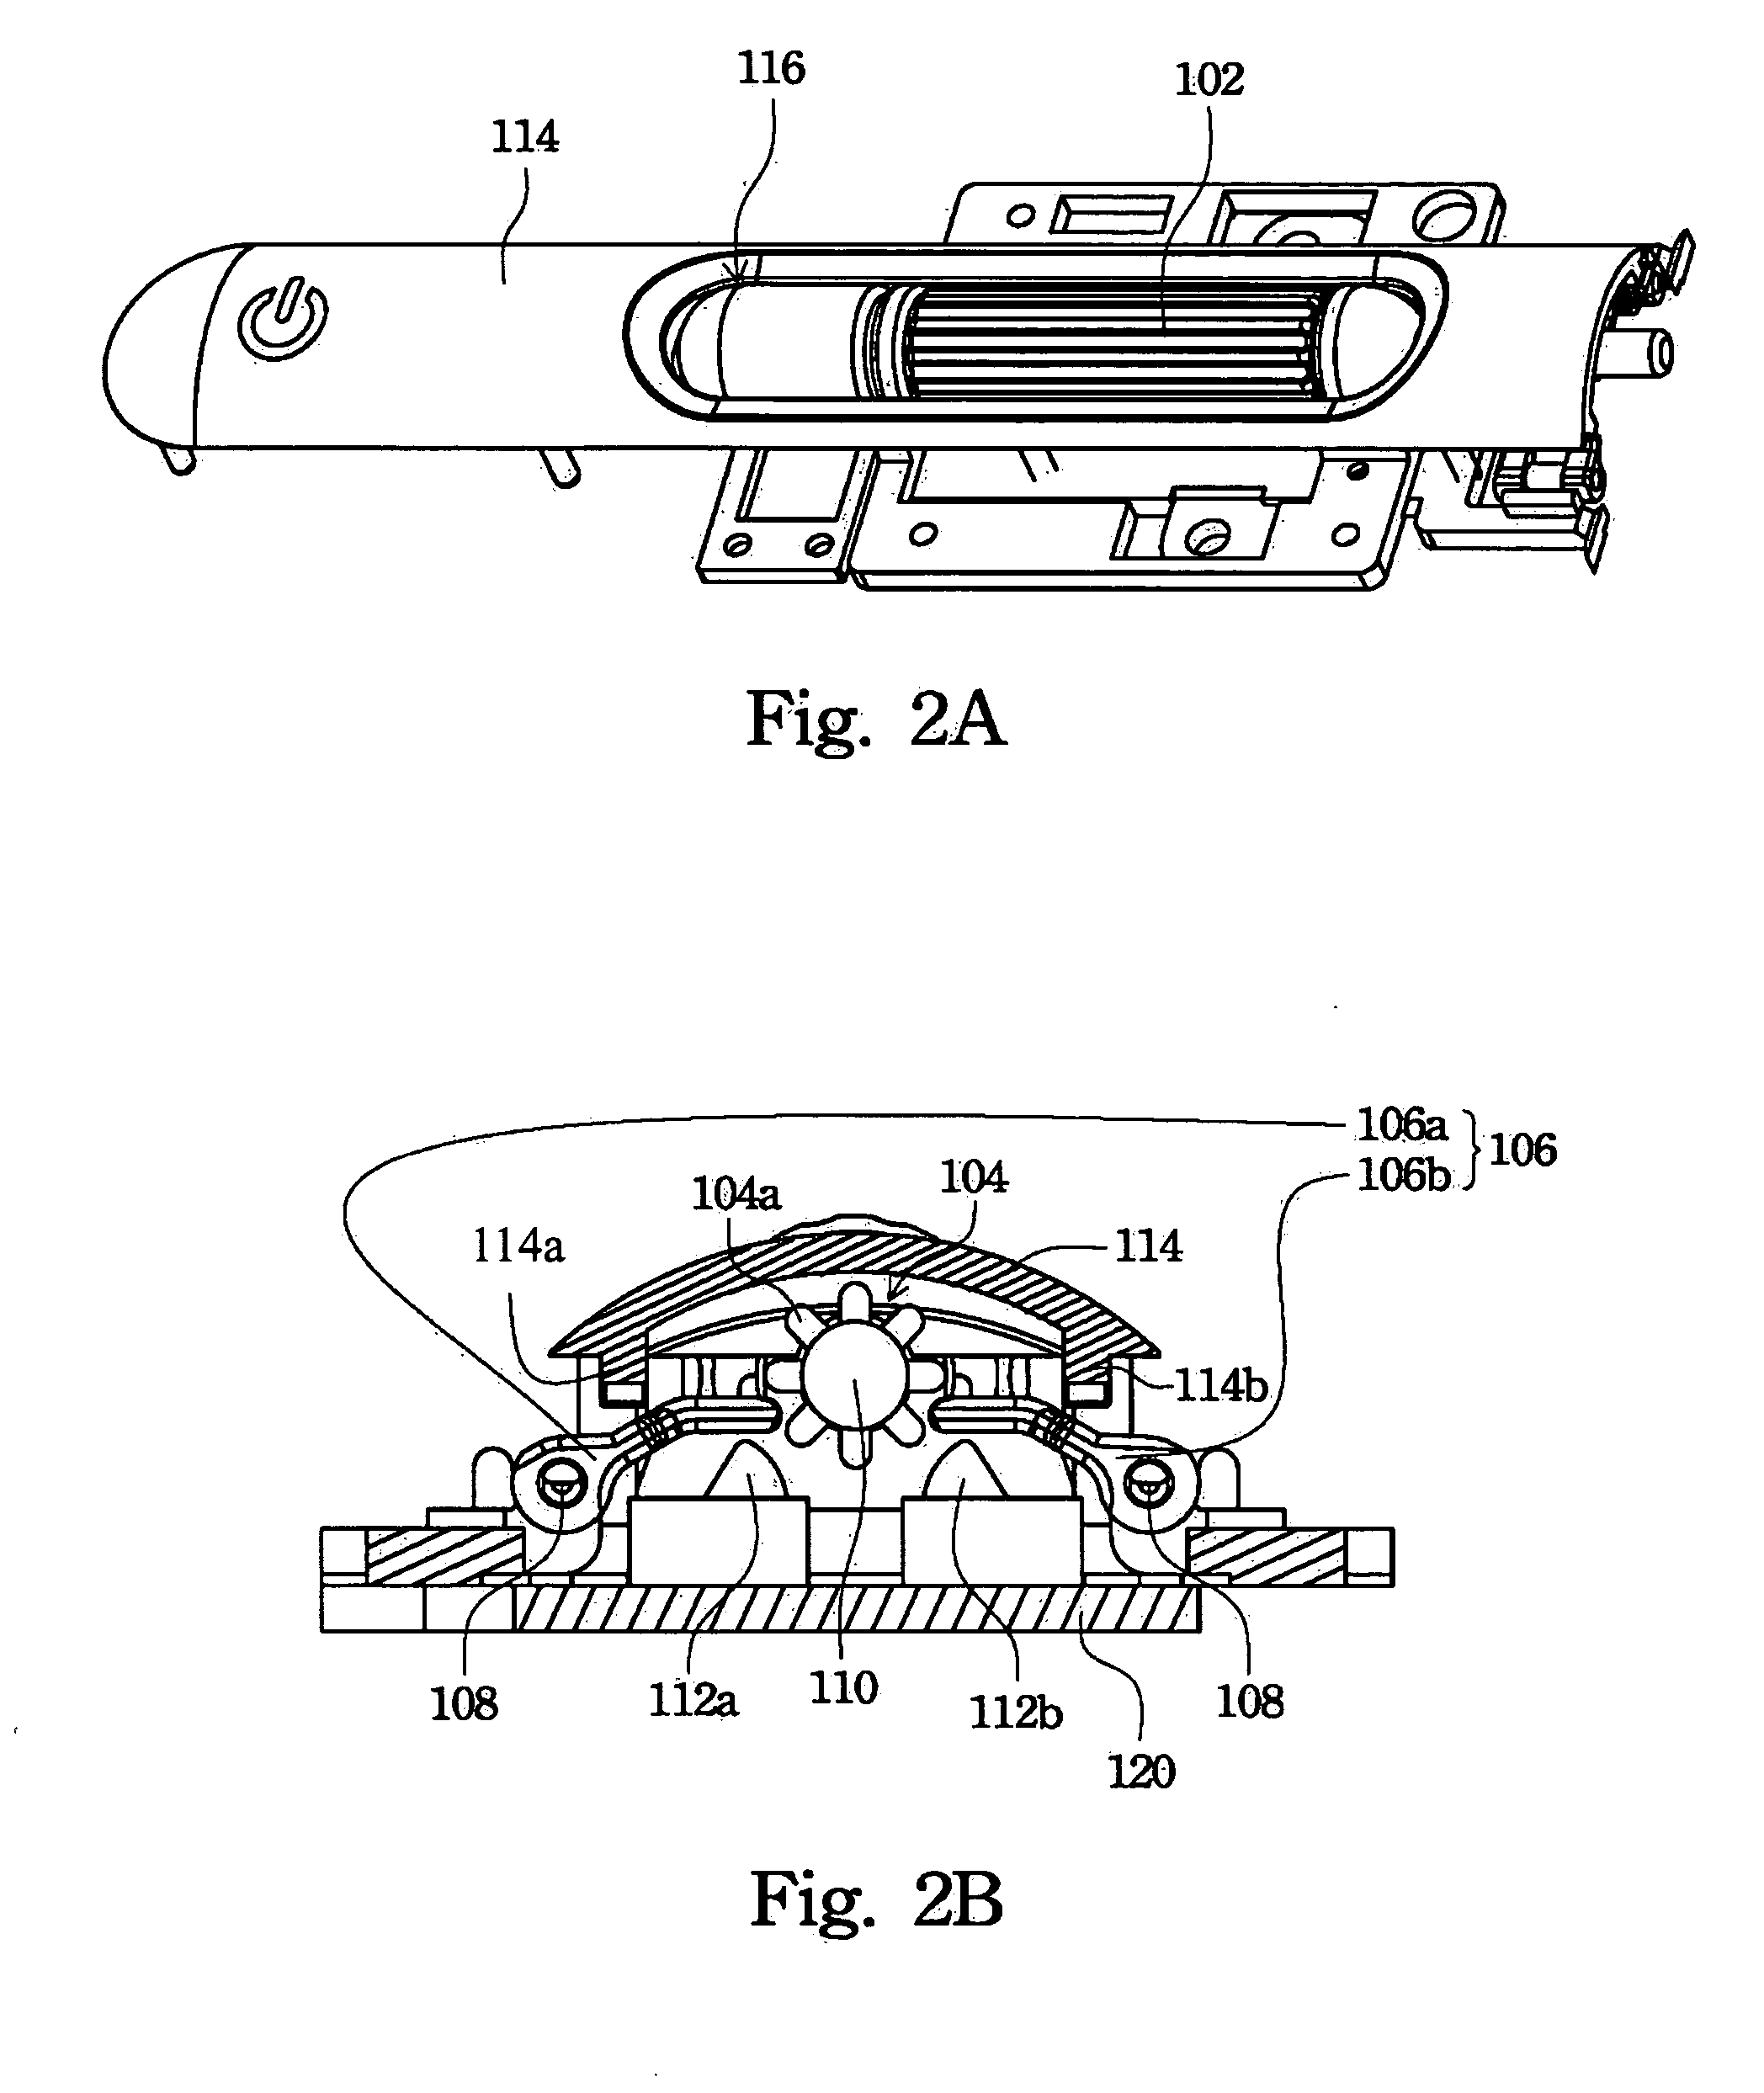 Mechanical roller controller